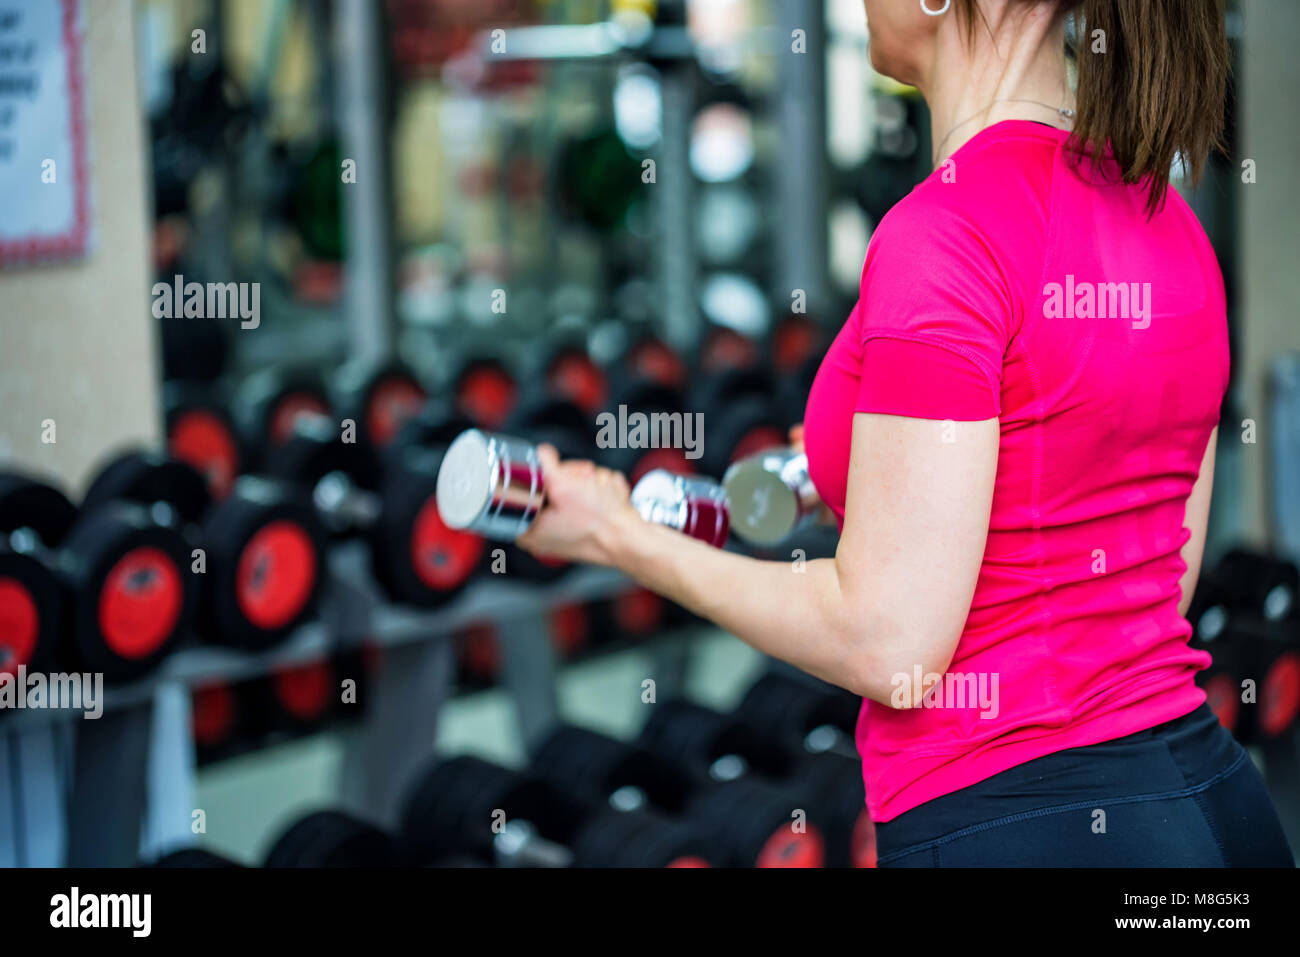 Jeune femme Vue de dos biceps trains in gym Banque D'Images